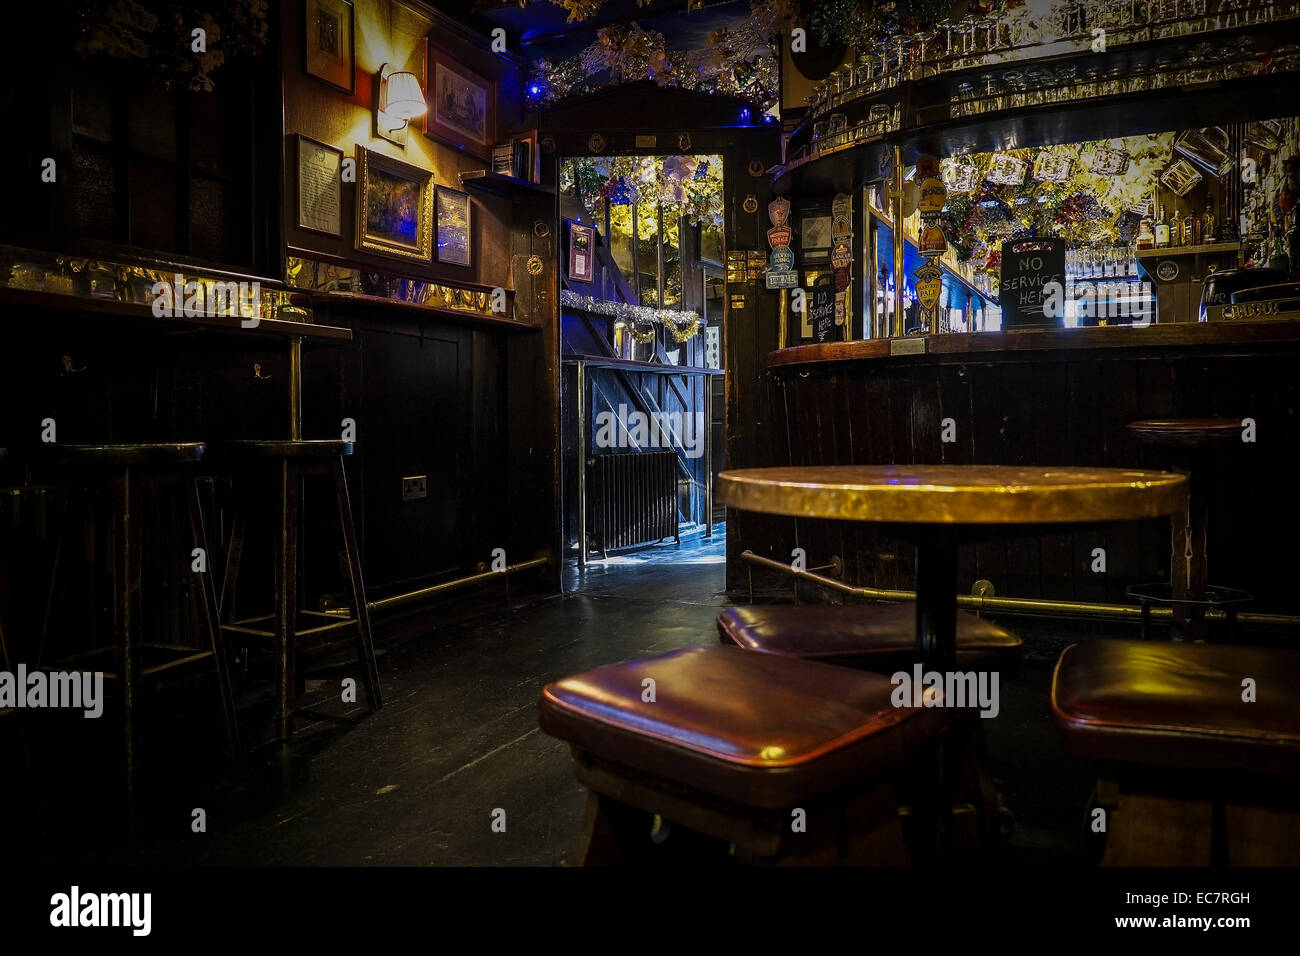 Das Innere der Lamm und Fahne Pub in Covent Garden in London. Stockfoto